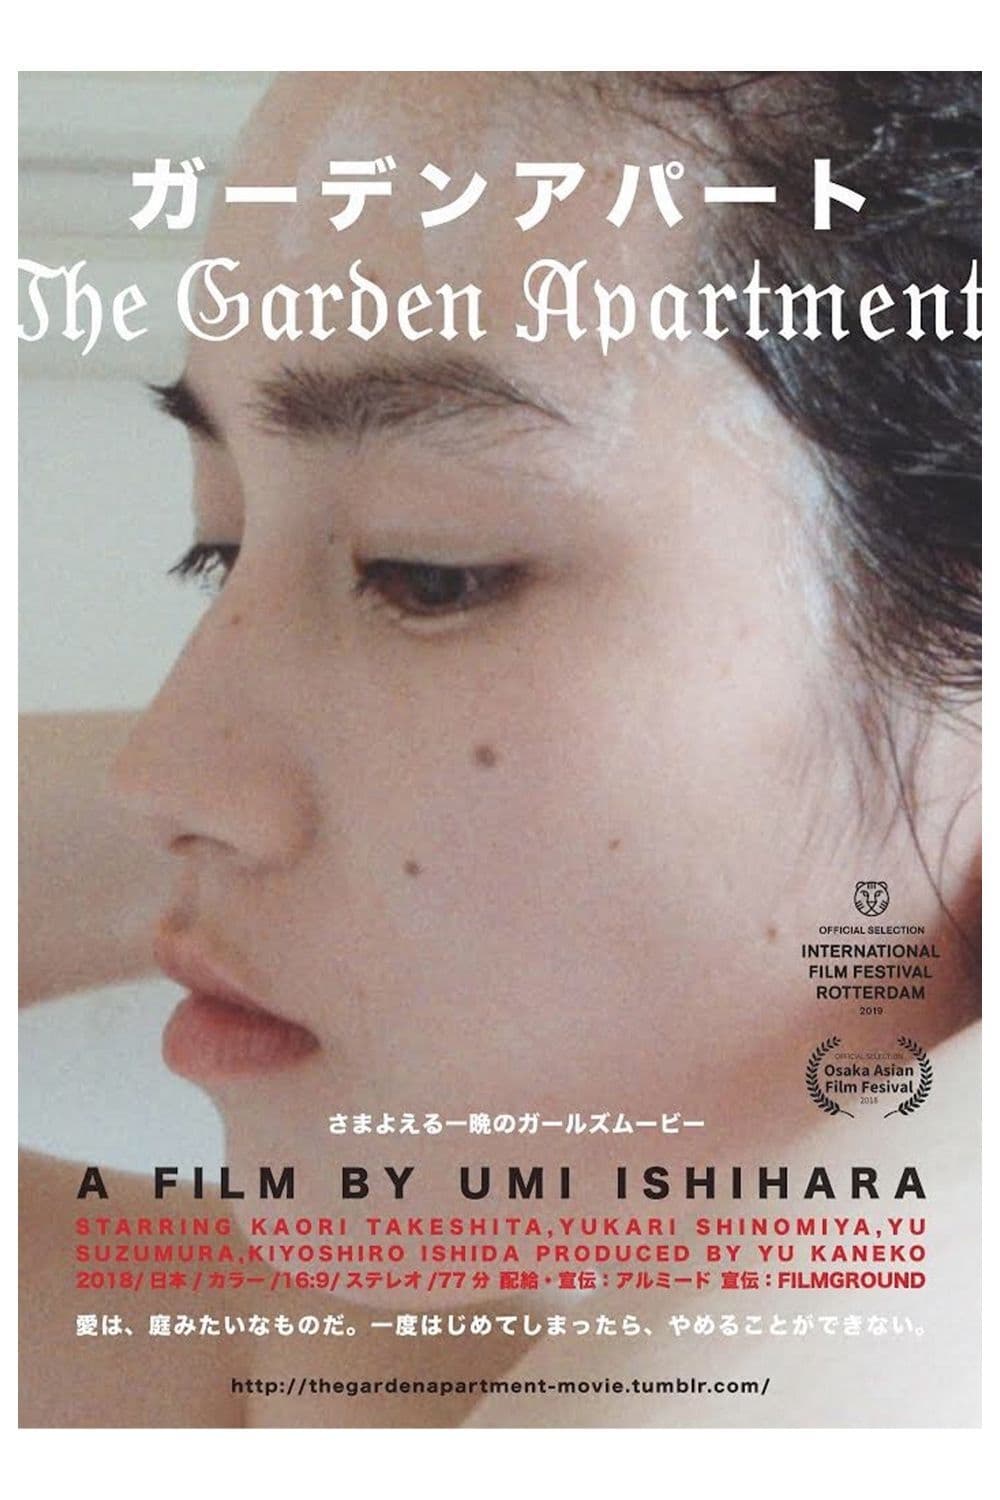 The Garden Apartment